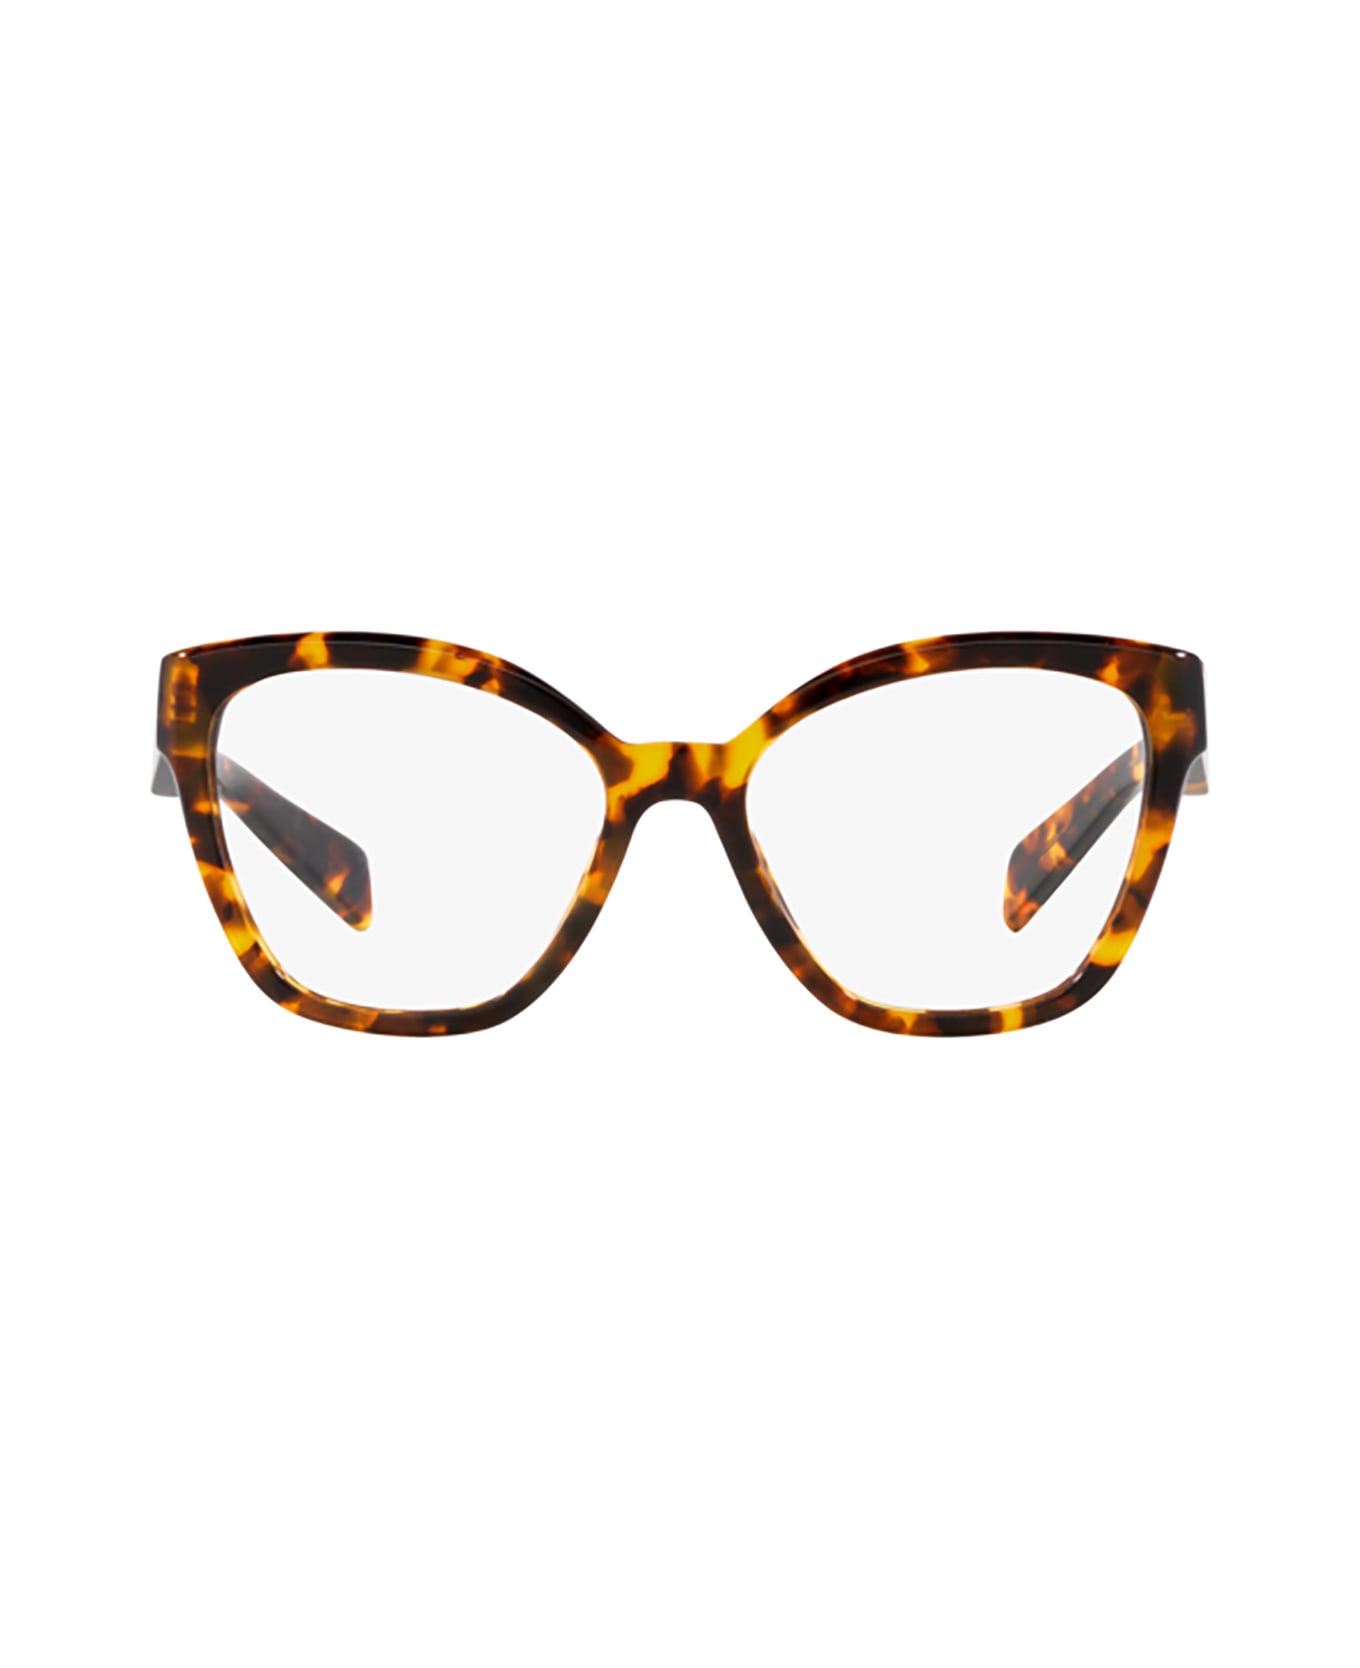 Prada Eyewear Pr 20zv Honey Tortoise Glasses - Honey Tortoise